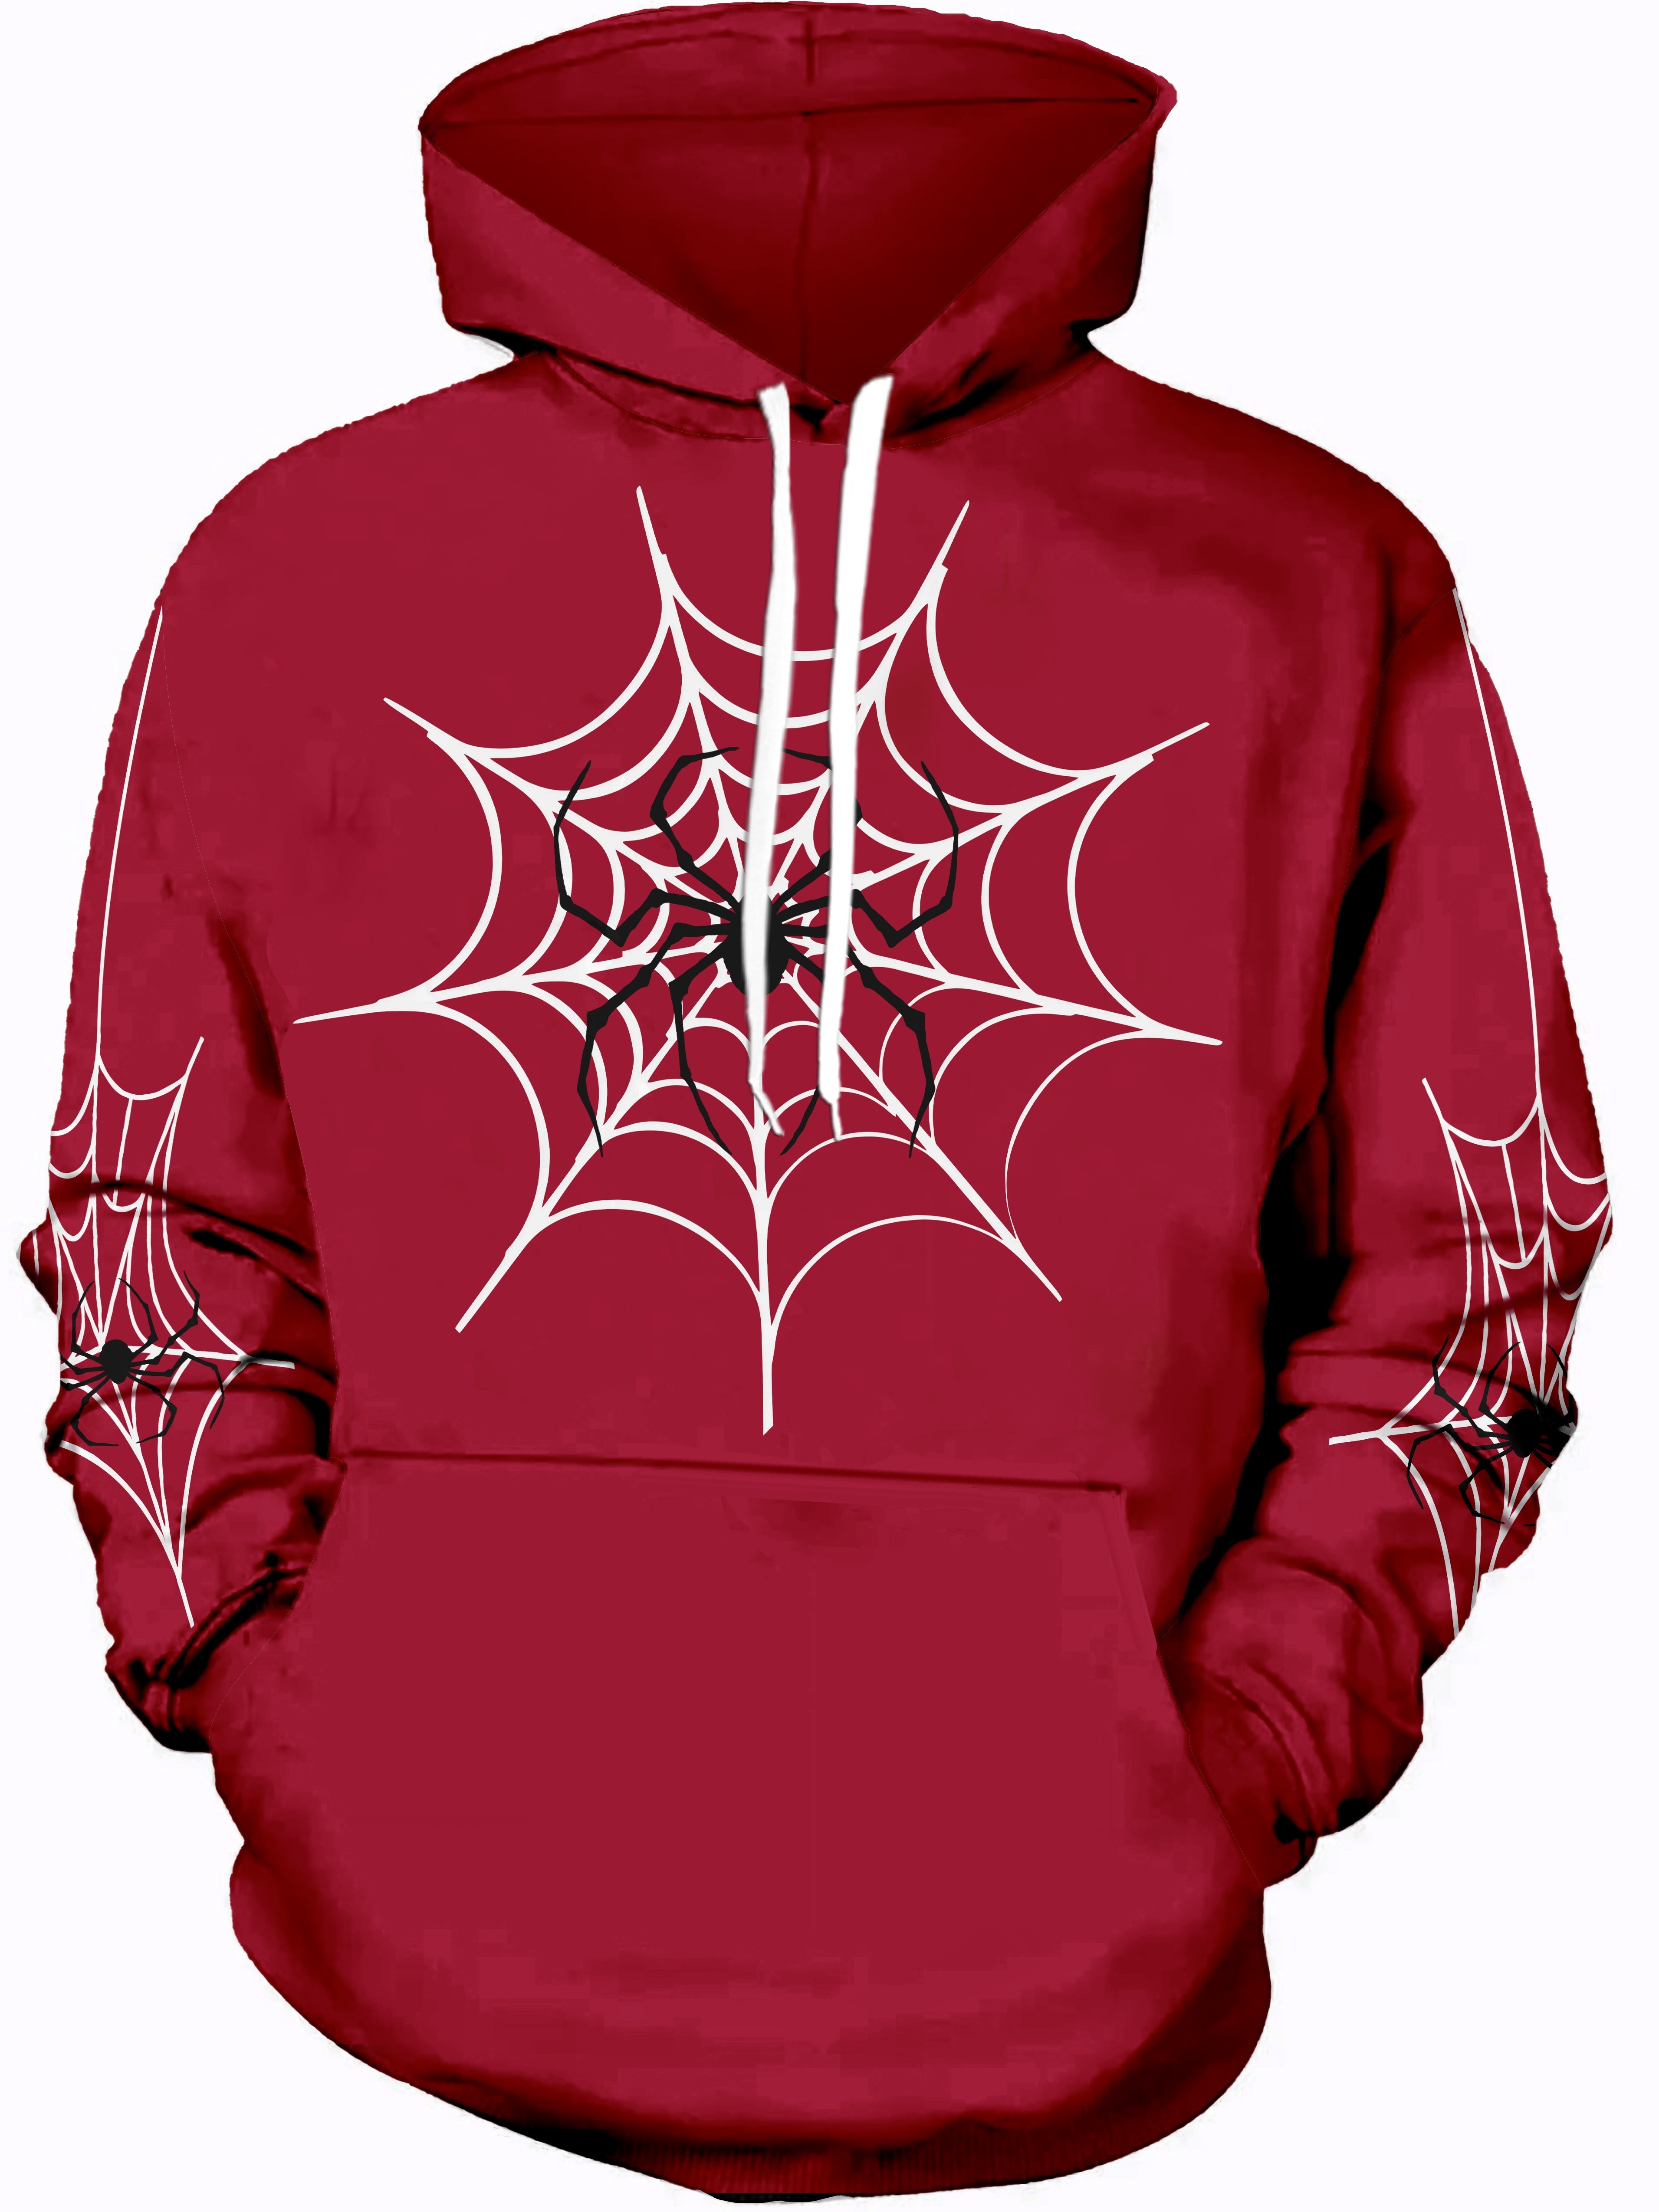 Spider-Man: Logo Hoodie, Official Spider-Man Merchandise